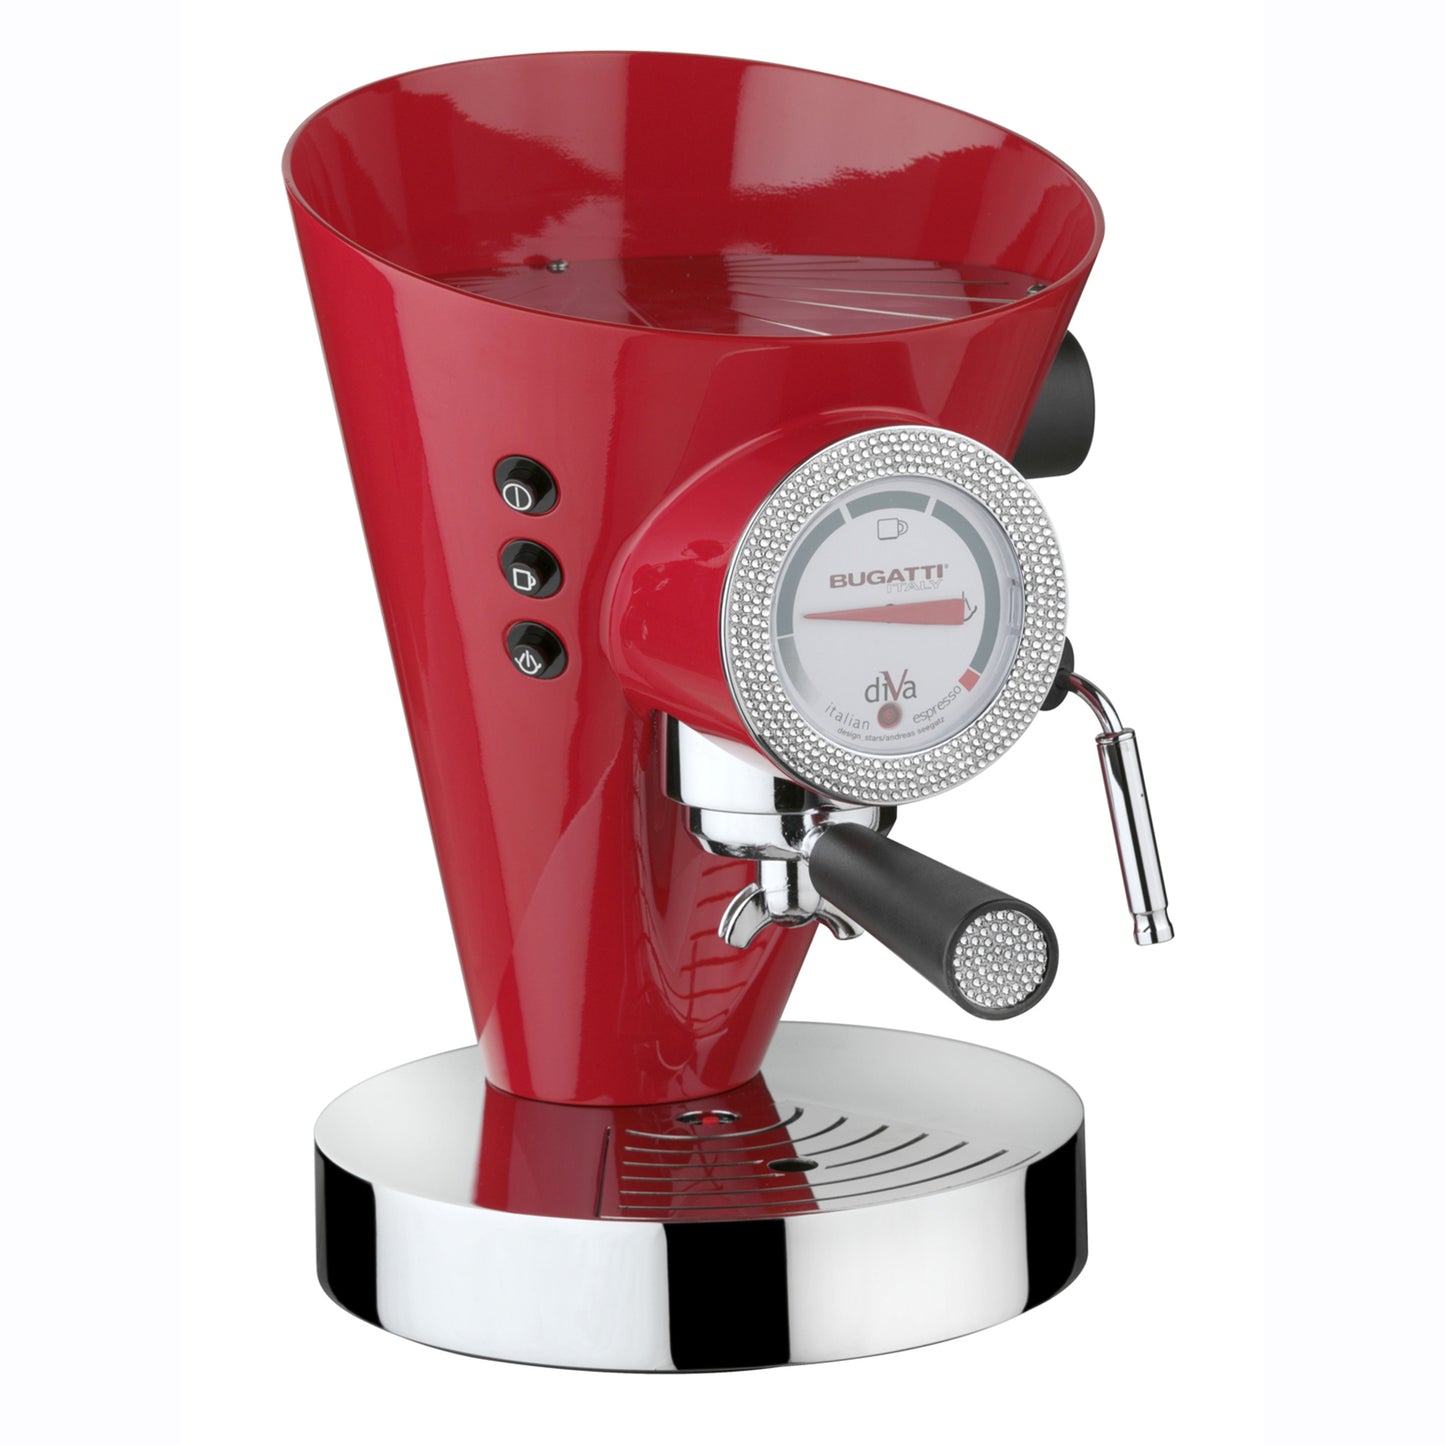 Bugatti Italy Diva Light Details Espresso Coffee Machine - Red